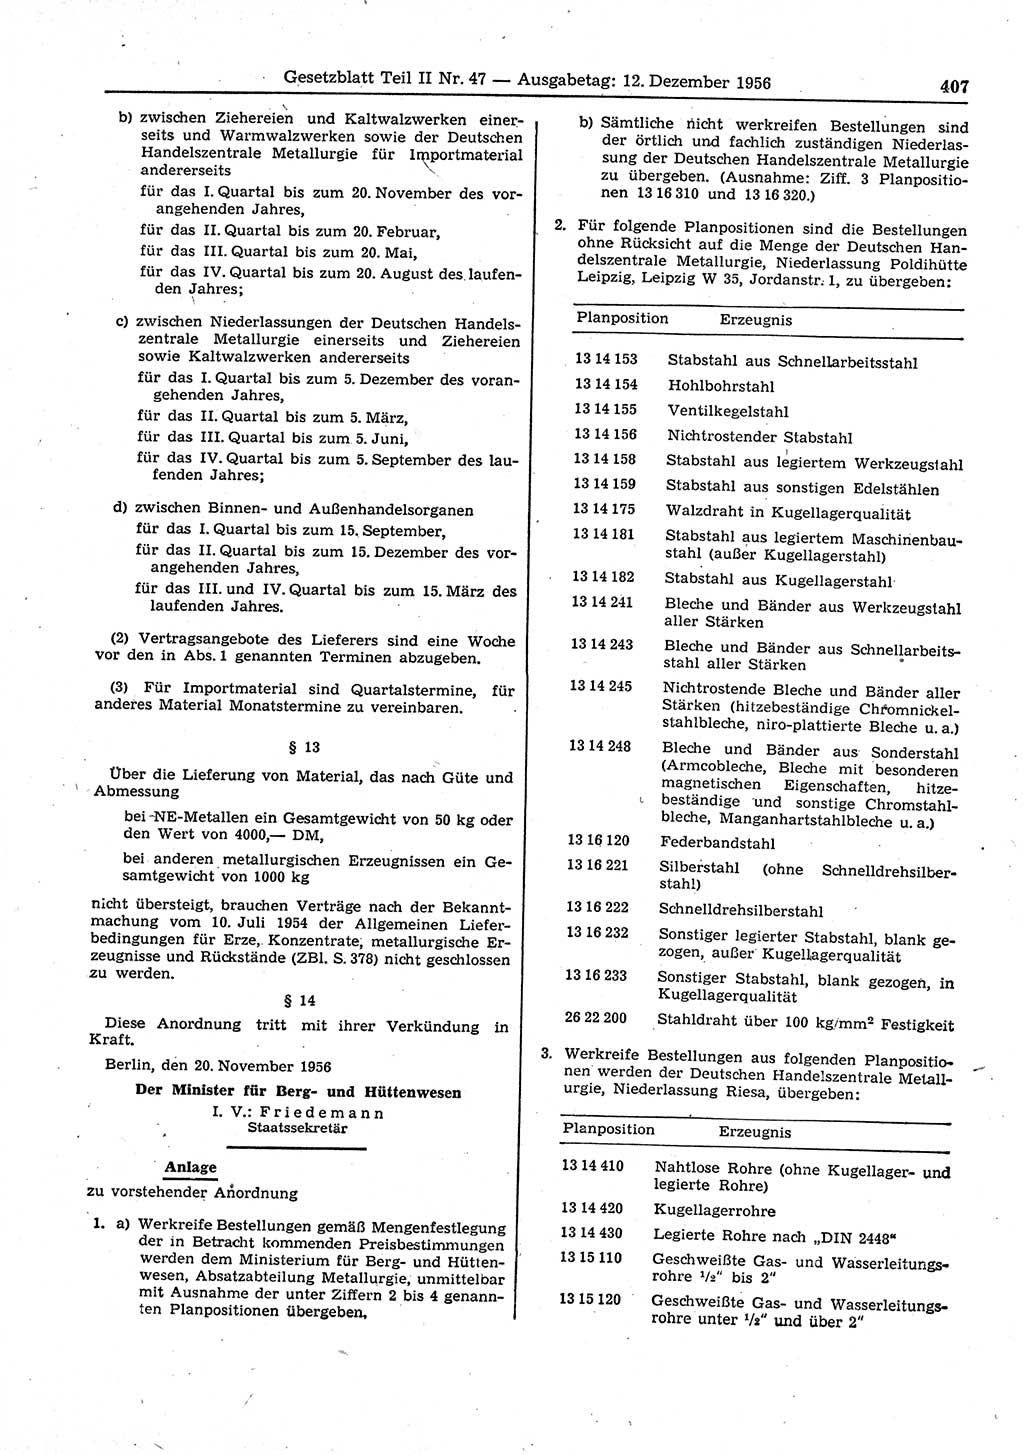 Gesetzblatt (GBl.) der Deutschen Demokratischen Republik (DDR) Teil ⅠⅠ 1956, Seite 407 (GBl. DDR ⅠⅠ 1956, S. 407)